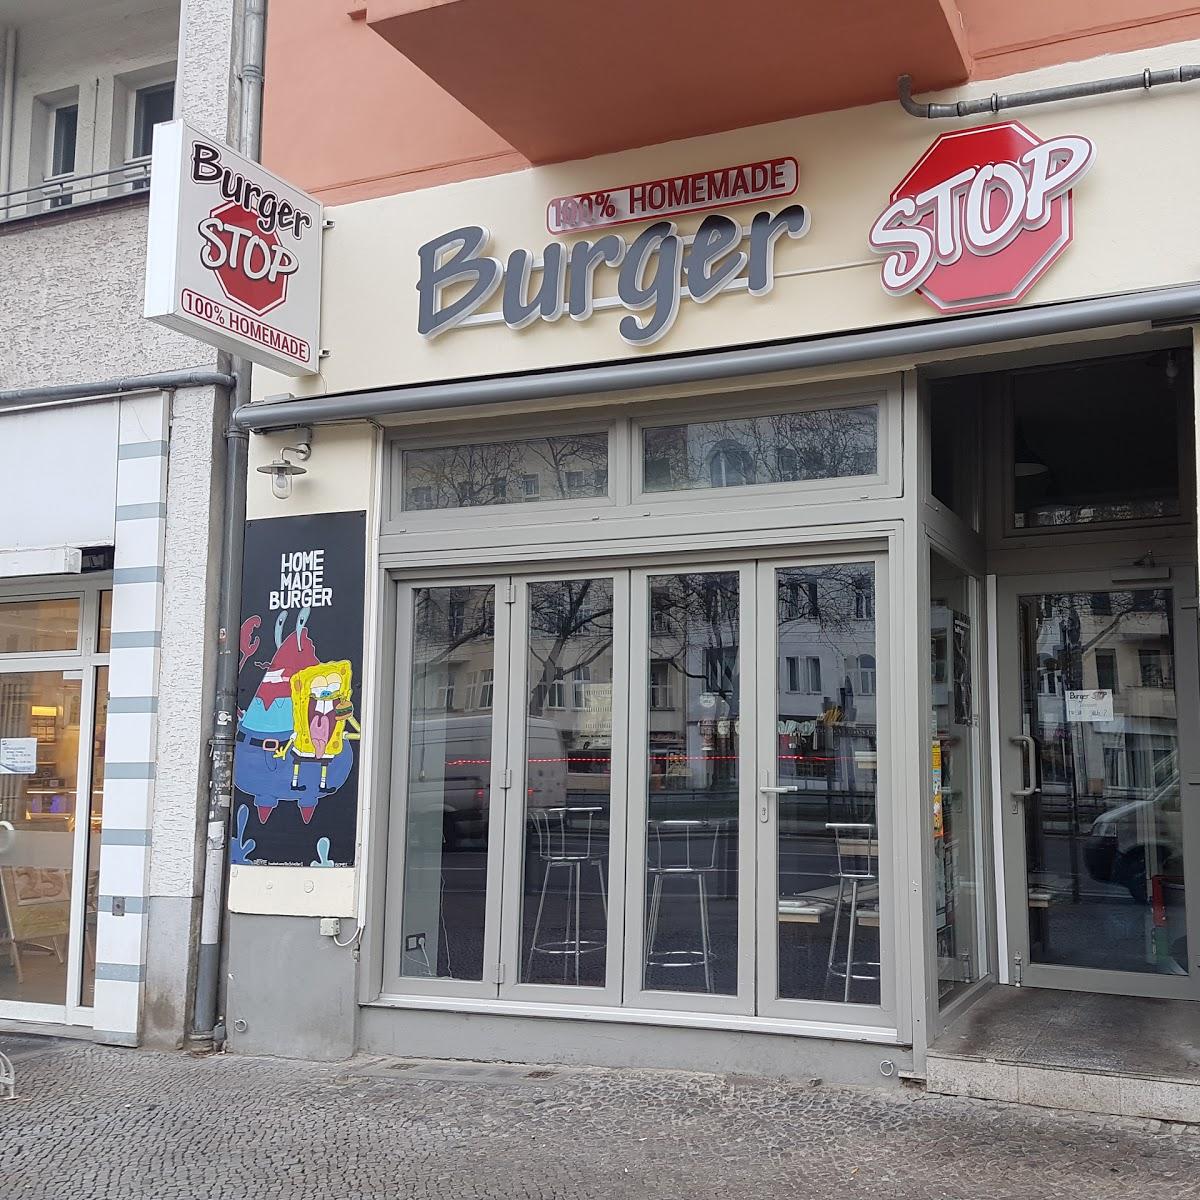 Restaurant "Burger Stop - pizza, pasta, burgers" in Berlin